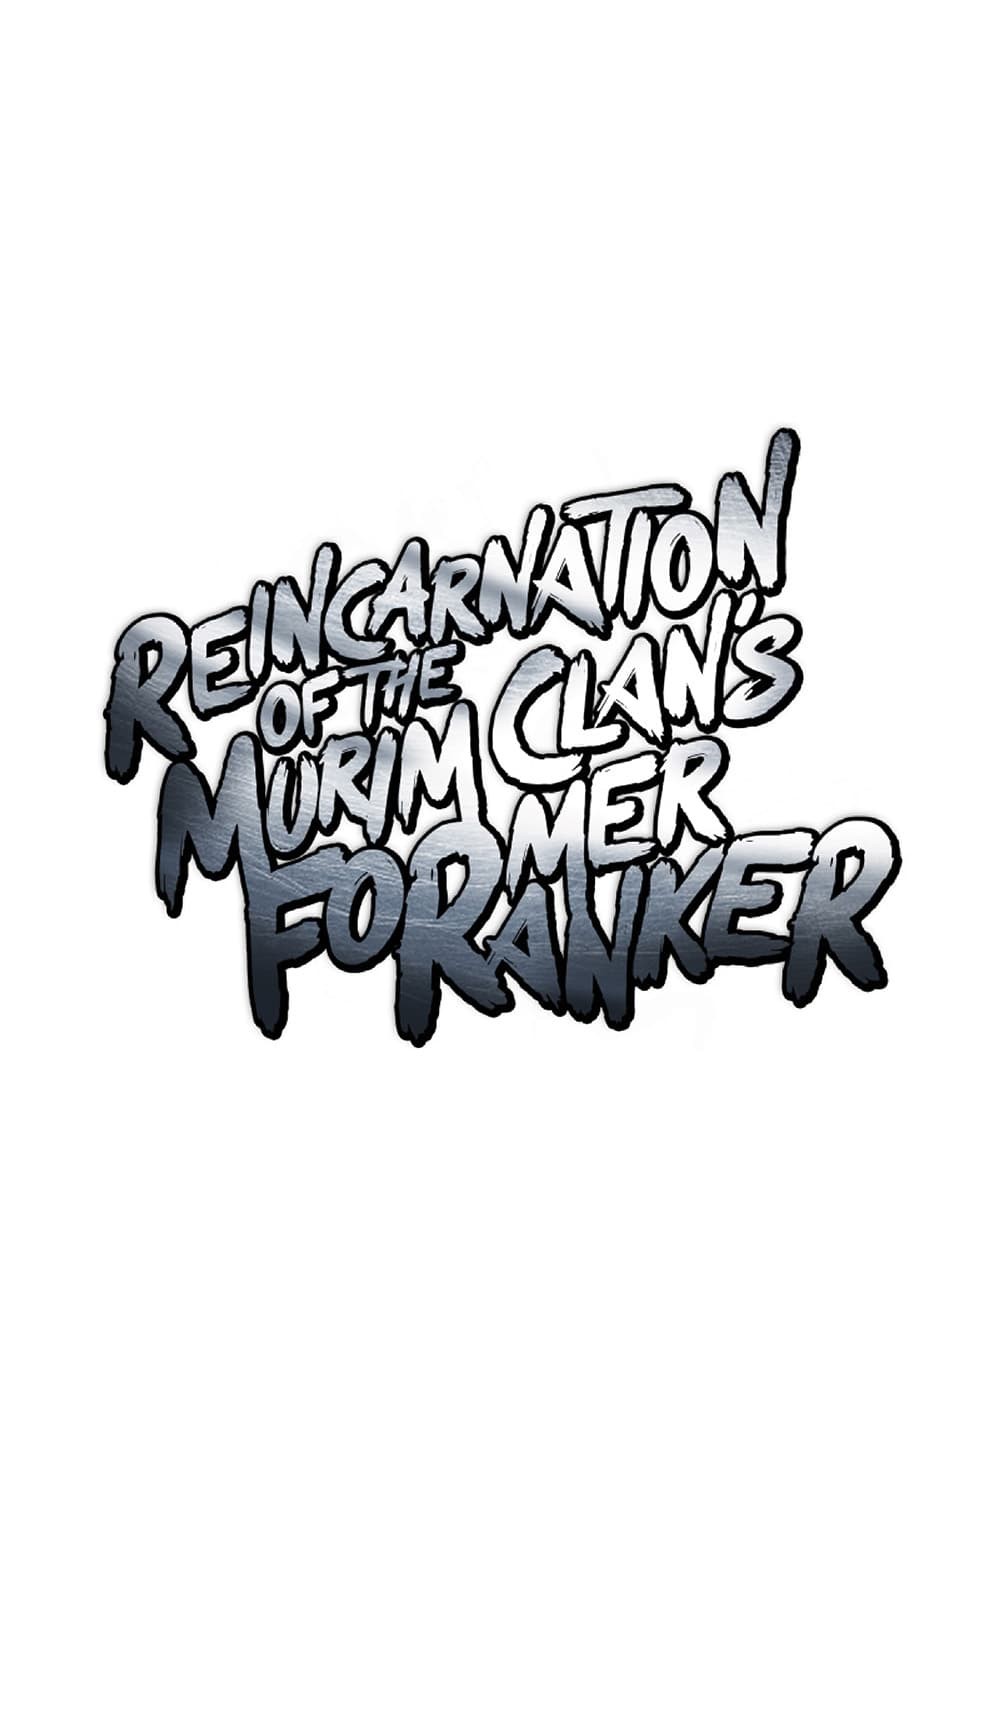 Reincarnation-of-the-Murim-Clans-Former-Ranker--30-28.jpg